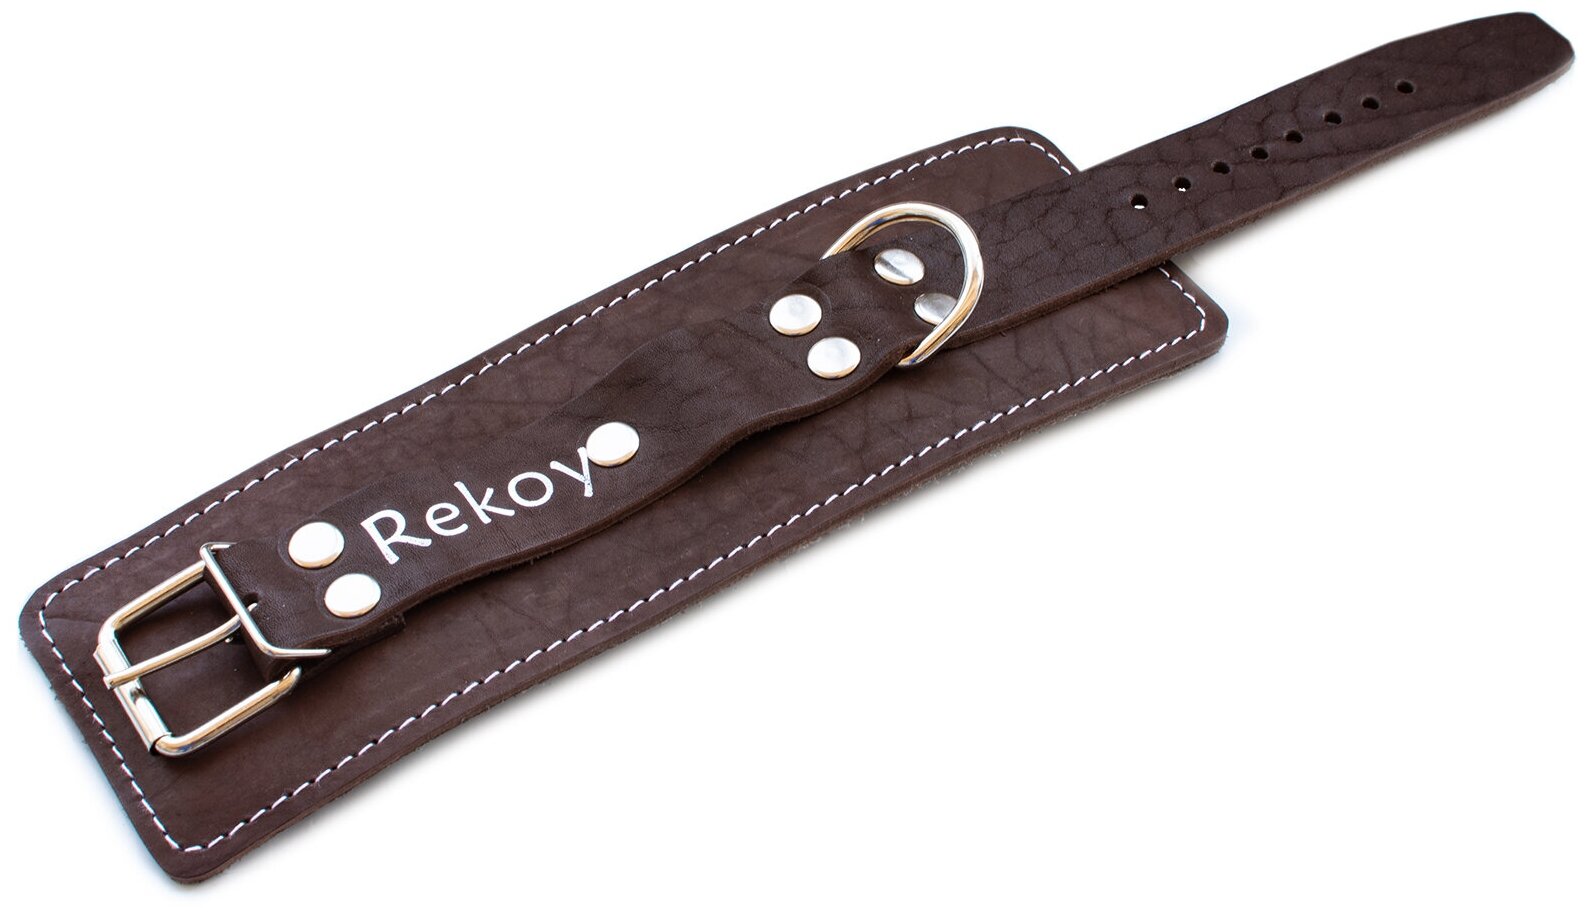 Манжета спортивная для ног ReKoy FG010 для тяги в тренажере, натуральная кожа, коричневый, 1 шт.